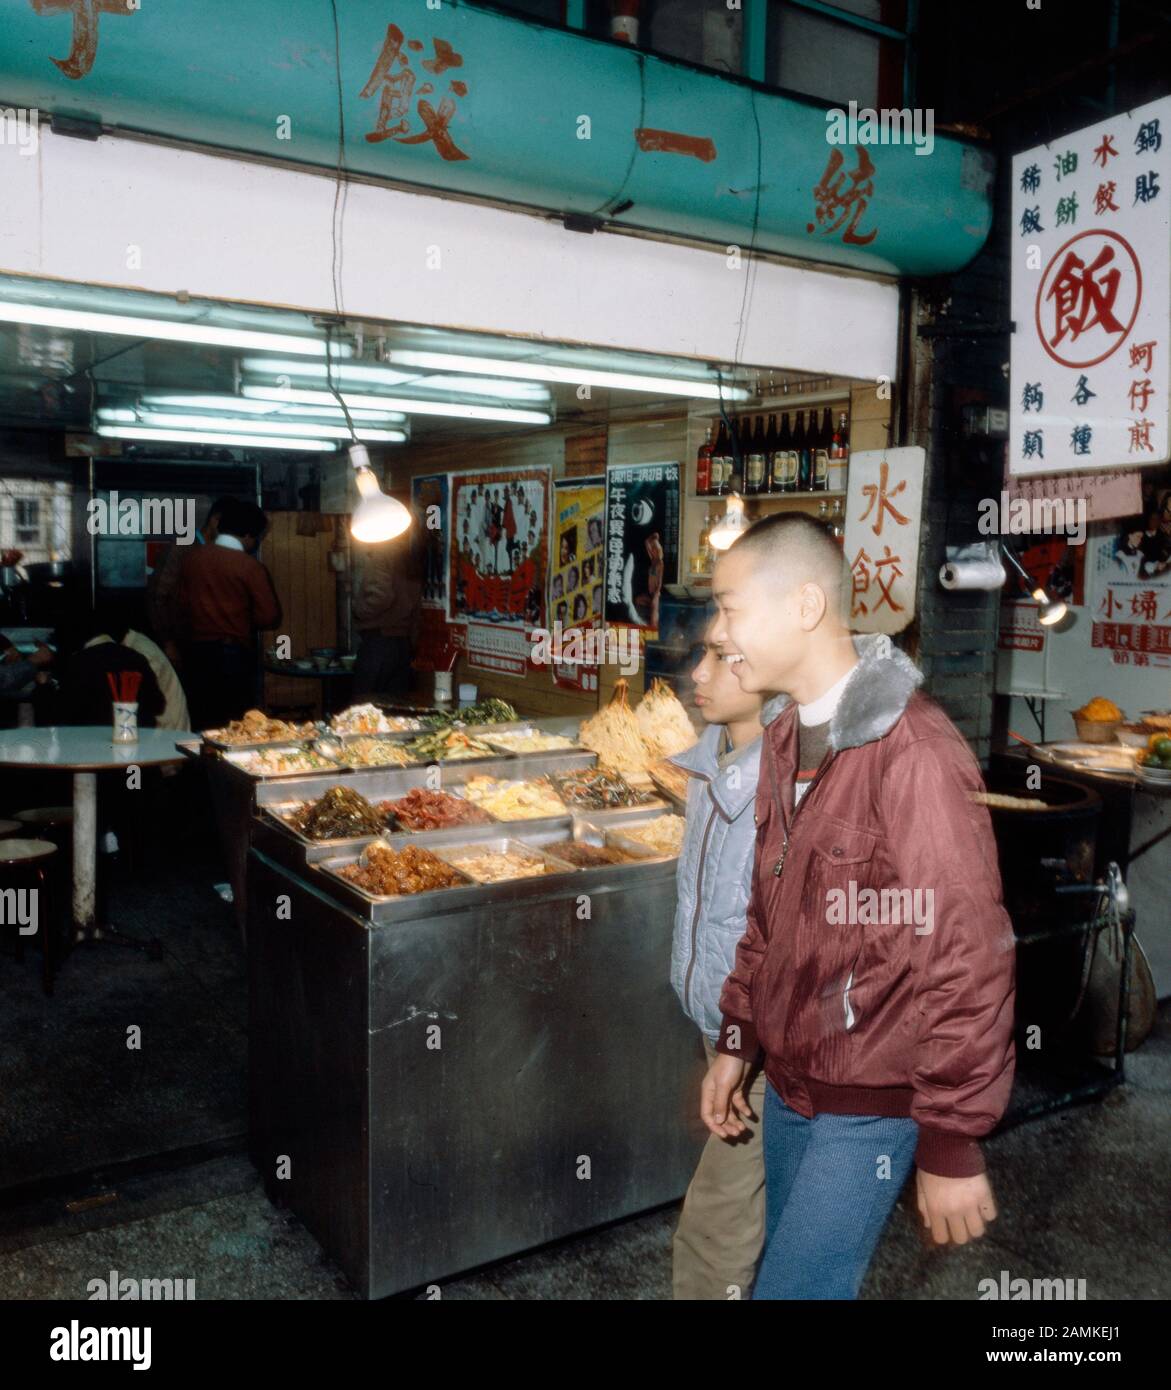 Garküche in den Straßen von Taiwan, 1980er Jahre. Cookshop in the streets of Taiwan, 1980s. Stock Photo